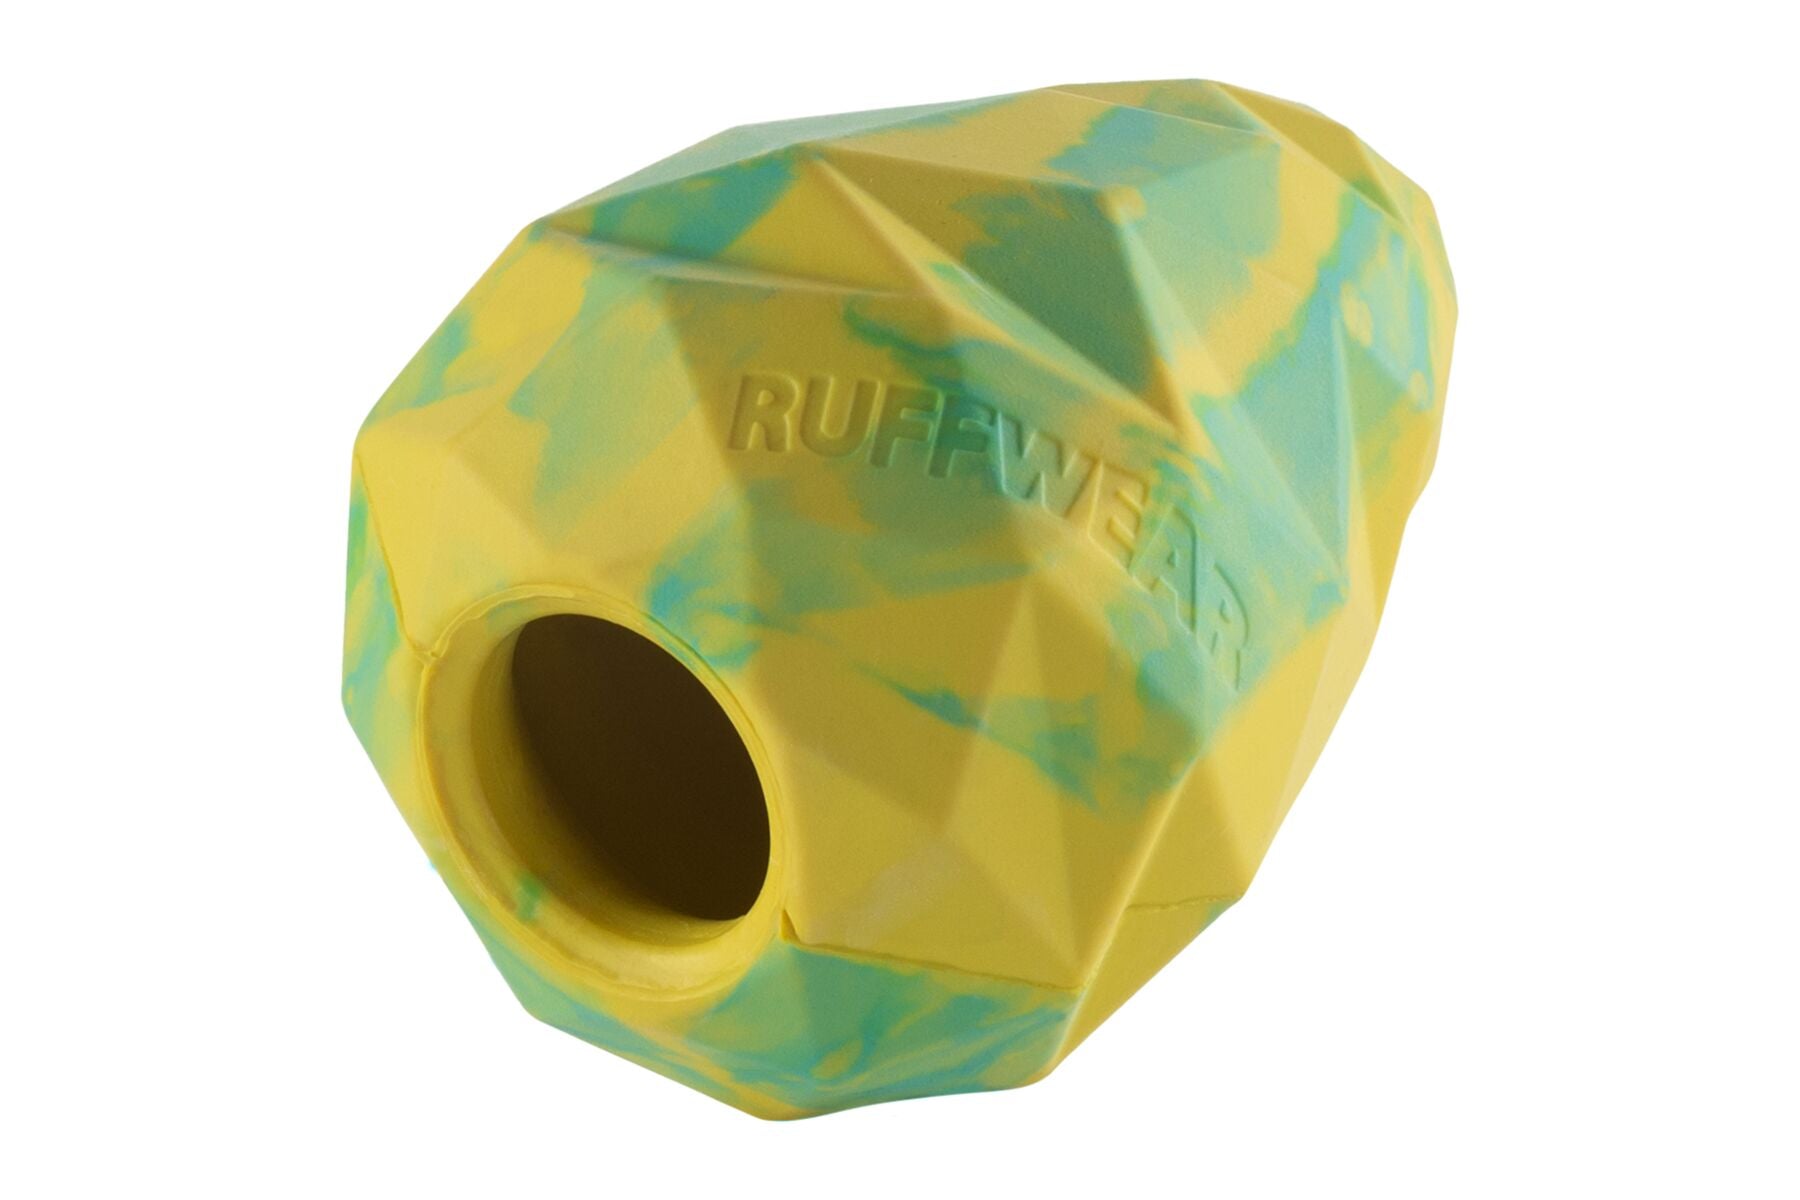 Gnawt-A-Cone® Amarillo Fosfo (Lichen Green) - Juguete & Dispensador de Premios de Ruffwear®